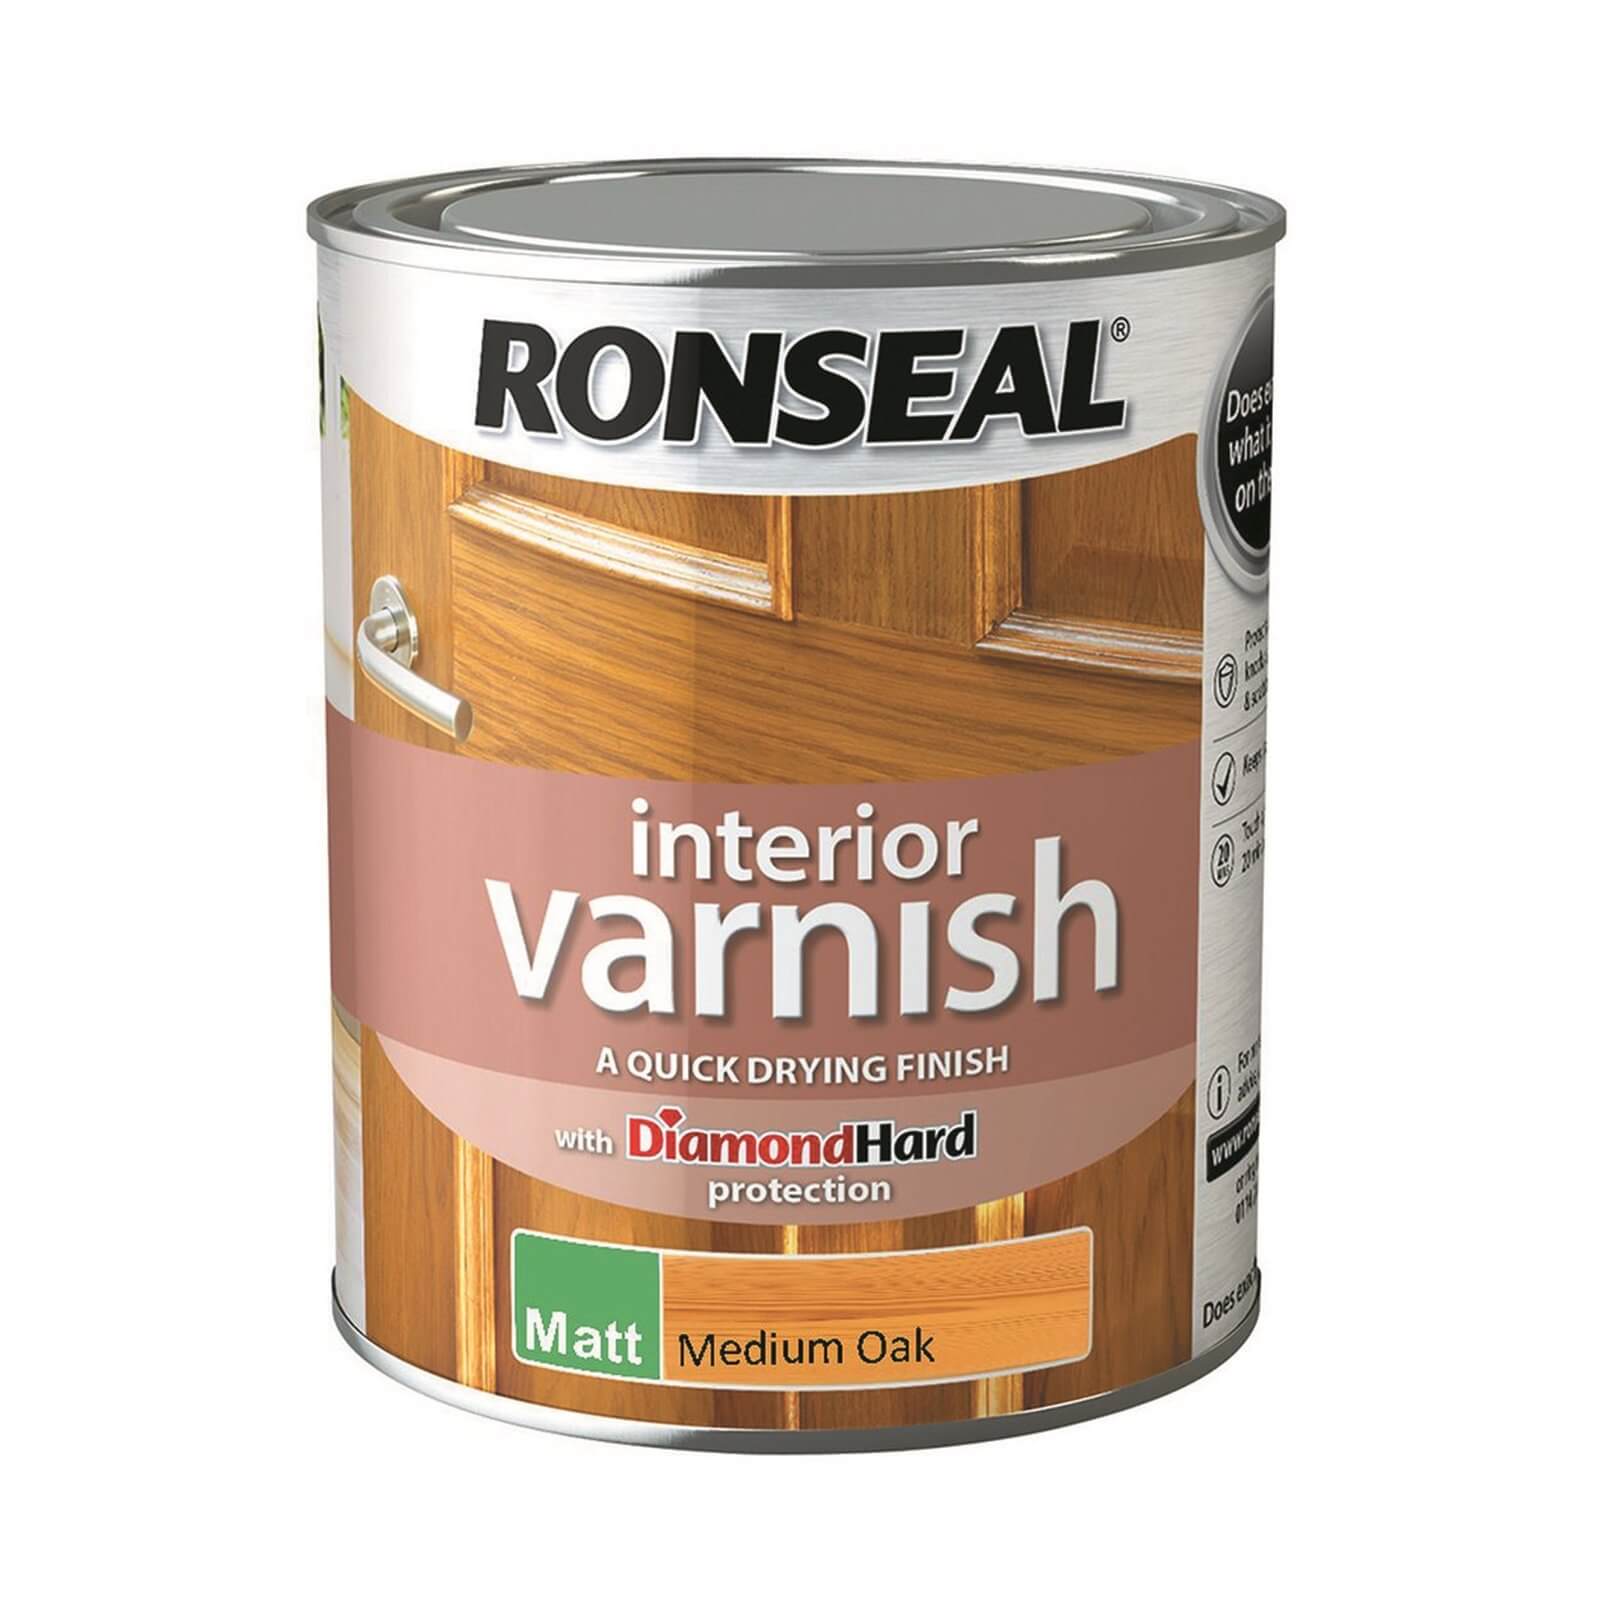 Ronseal Interior Varnish Matt Medium Oak - 750ml